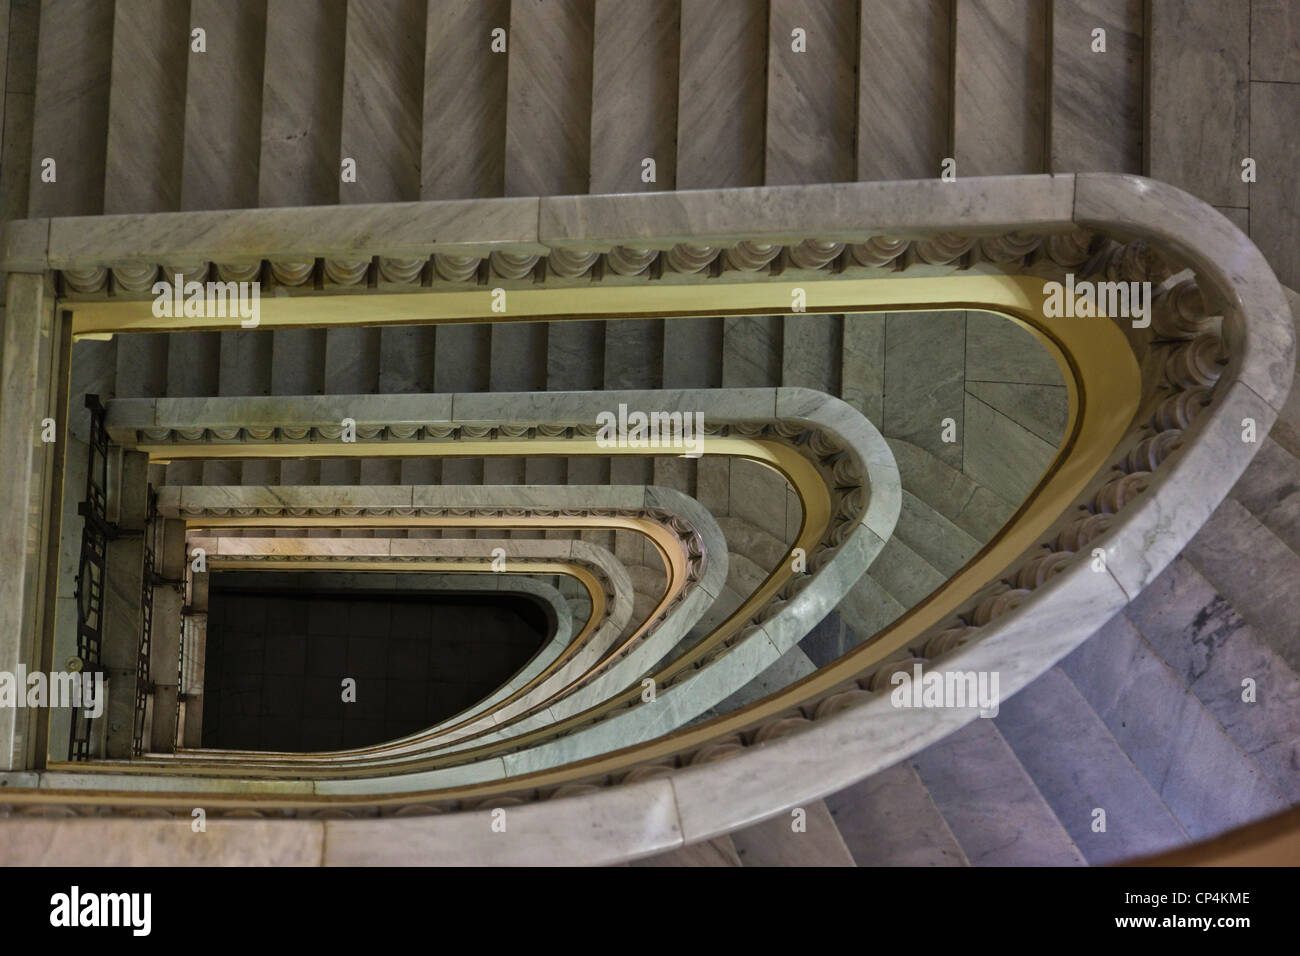 Spain, Madrid, Circulo de Bellas Artes, staircase Stock Photo